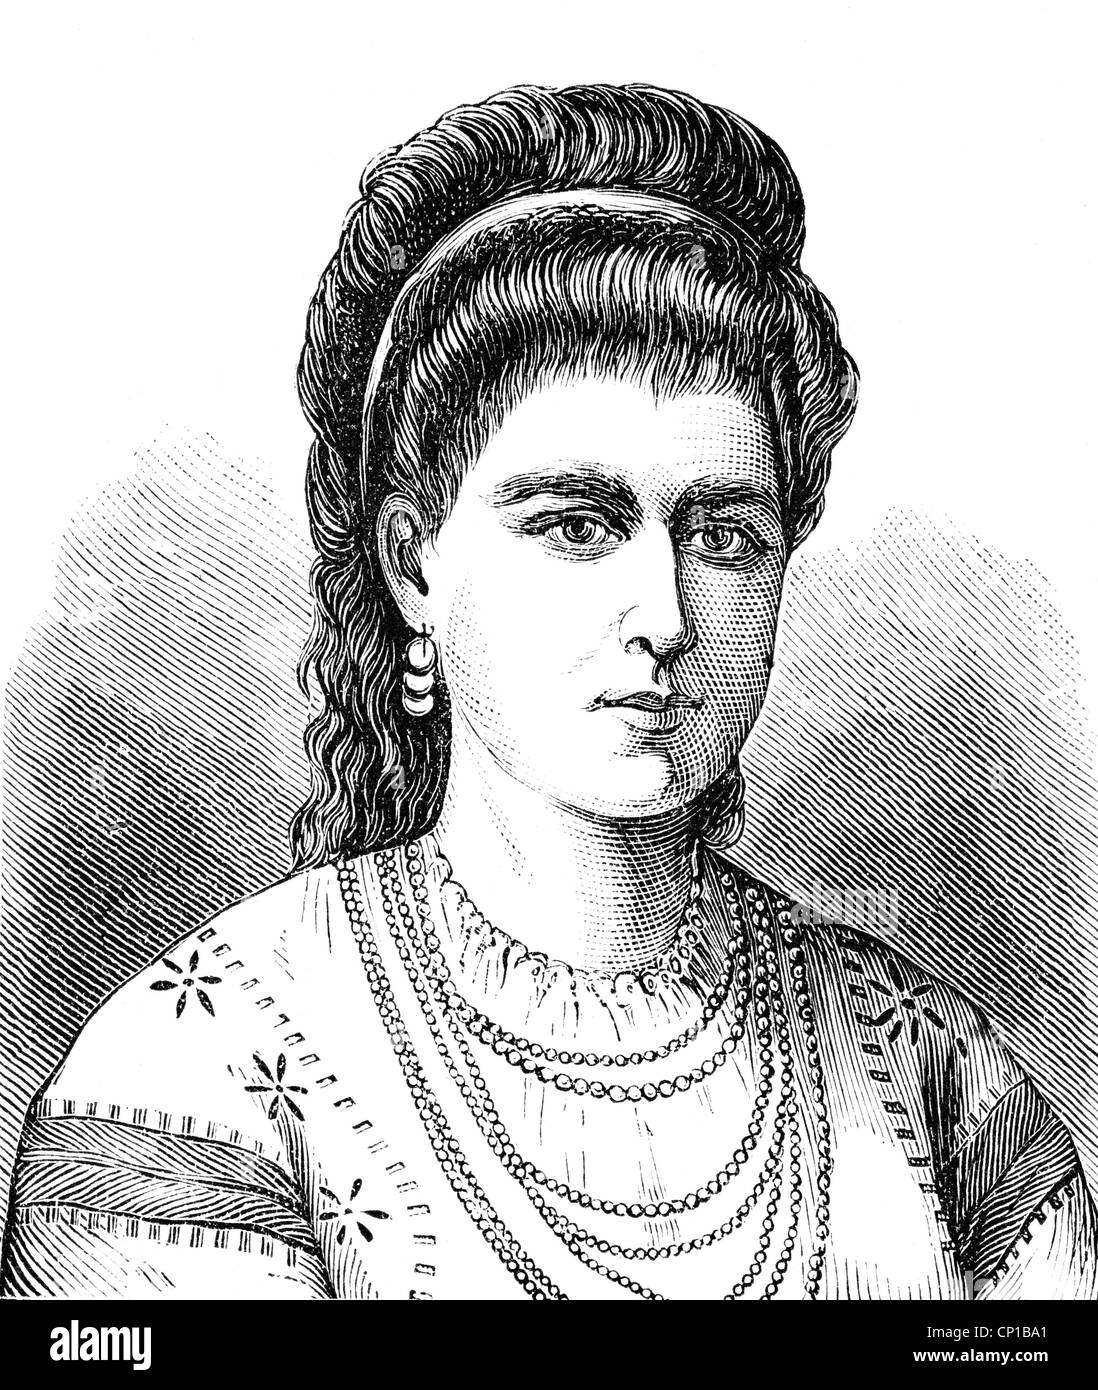 Elisabeth, 29.12.1843 - 2.3. 1916, Consorte Regina di Romania 26.3.1881 - 10.10.1914, ritratto, incisione in legno, circa 1885, Foto Stock